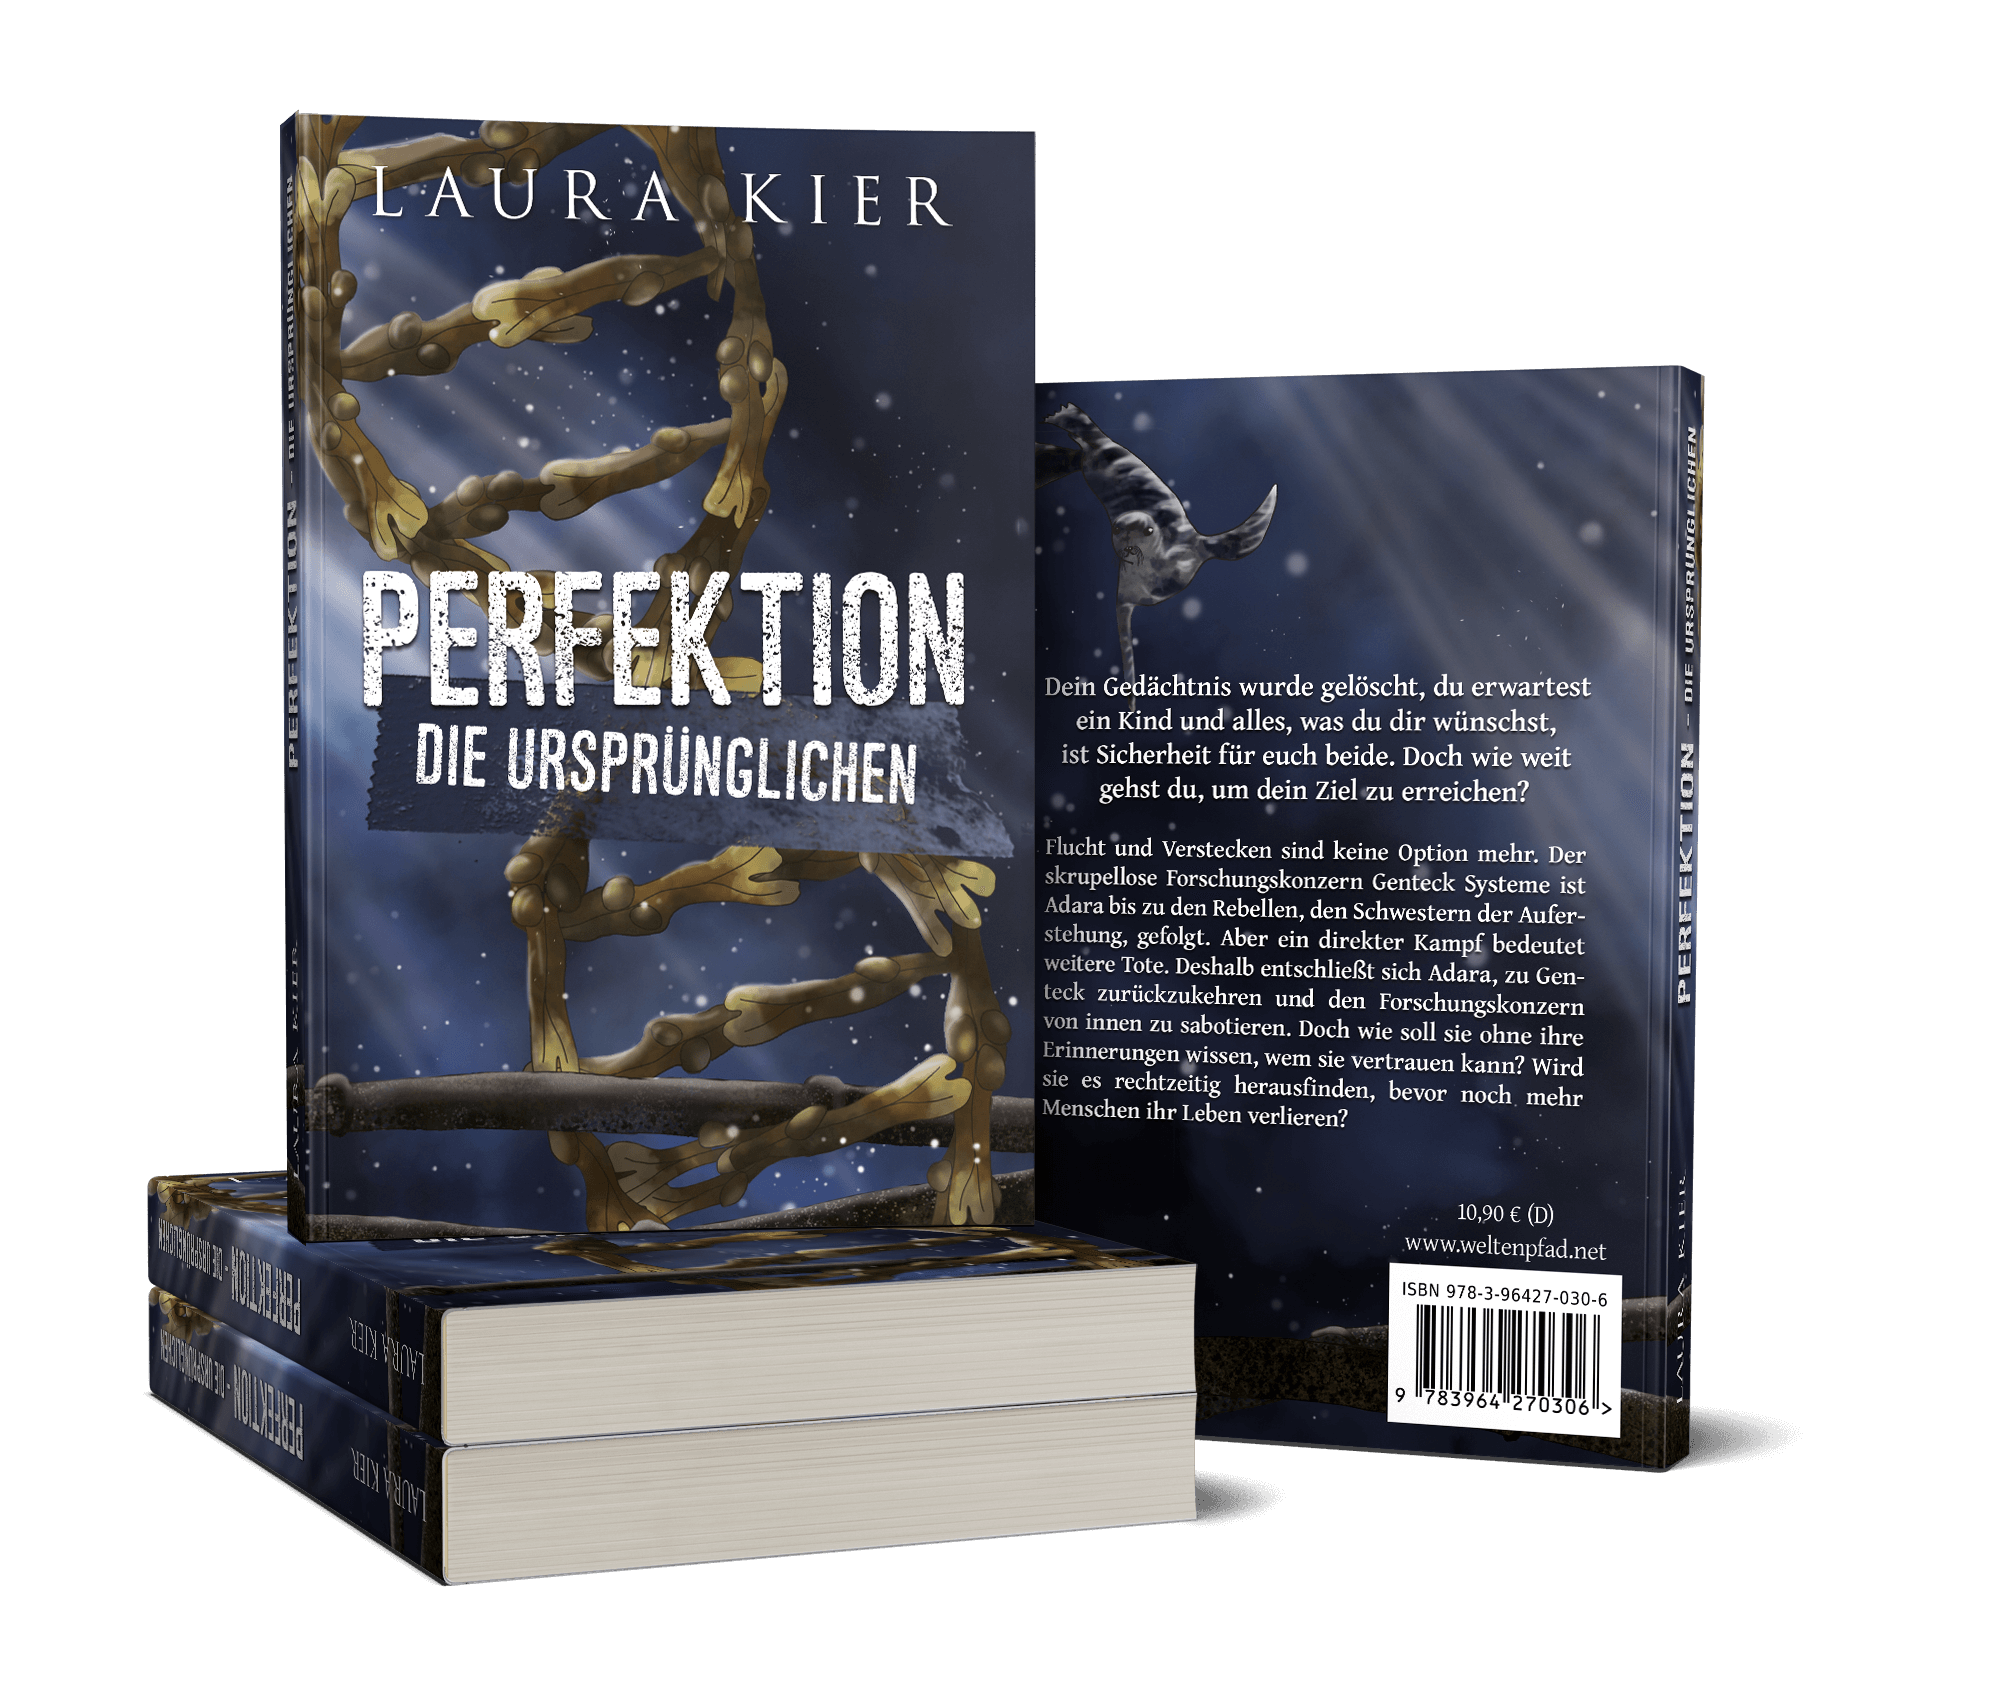 Perfektion - Die Ursprünglichen von Laura Kier Cover Mockup